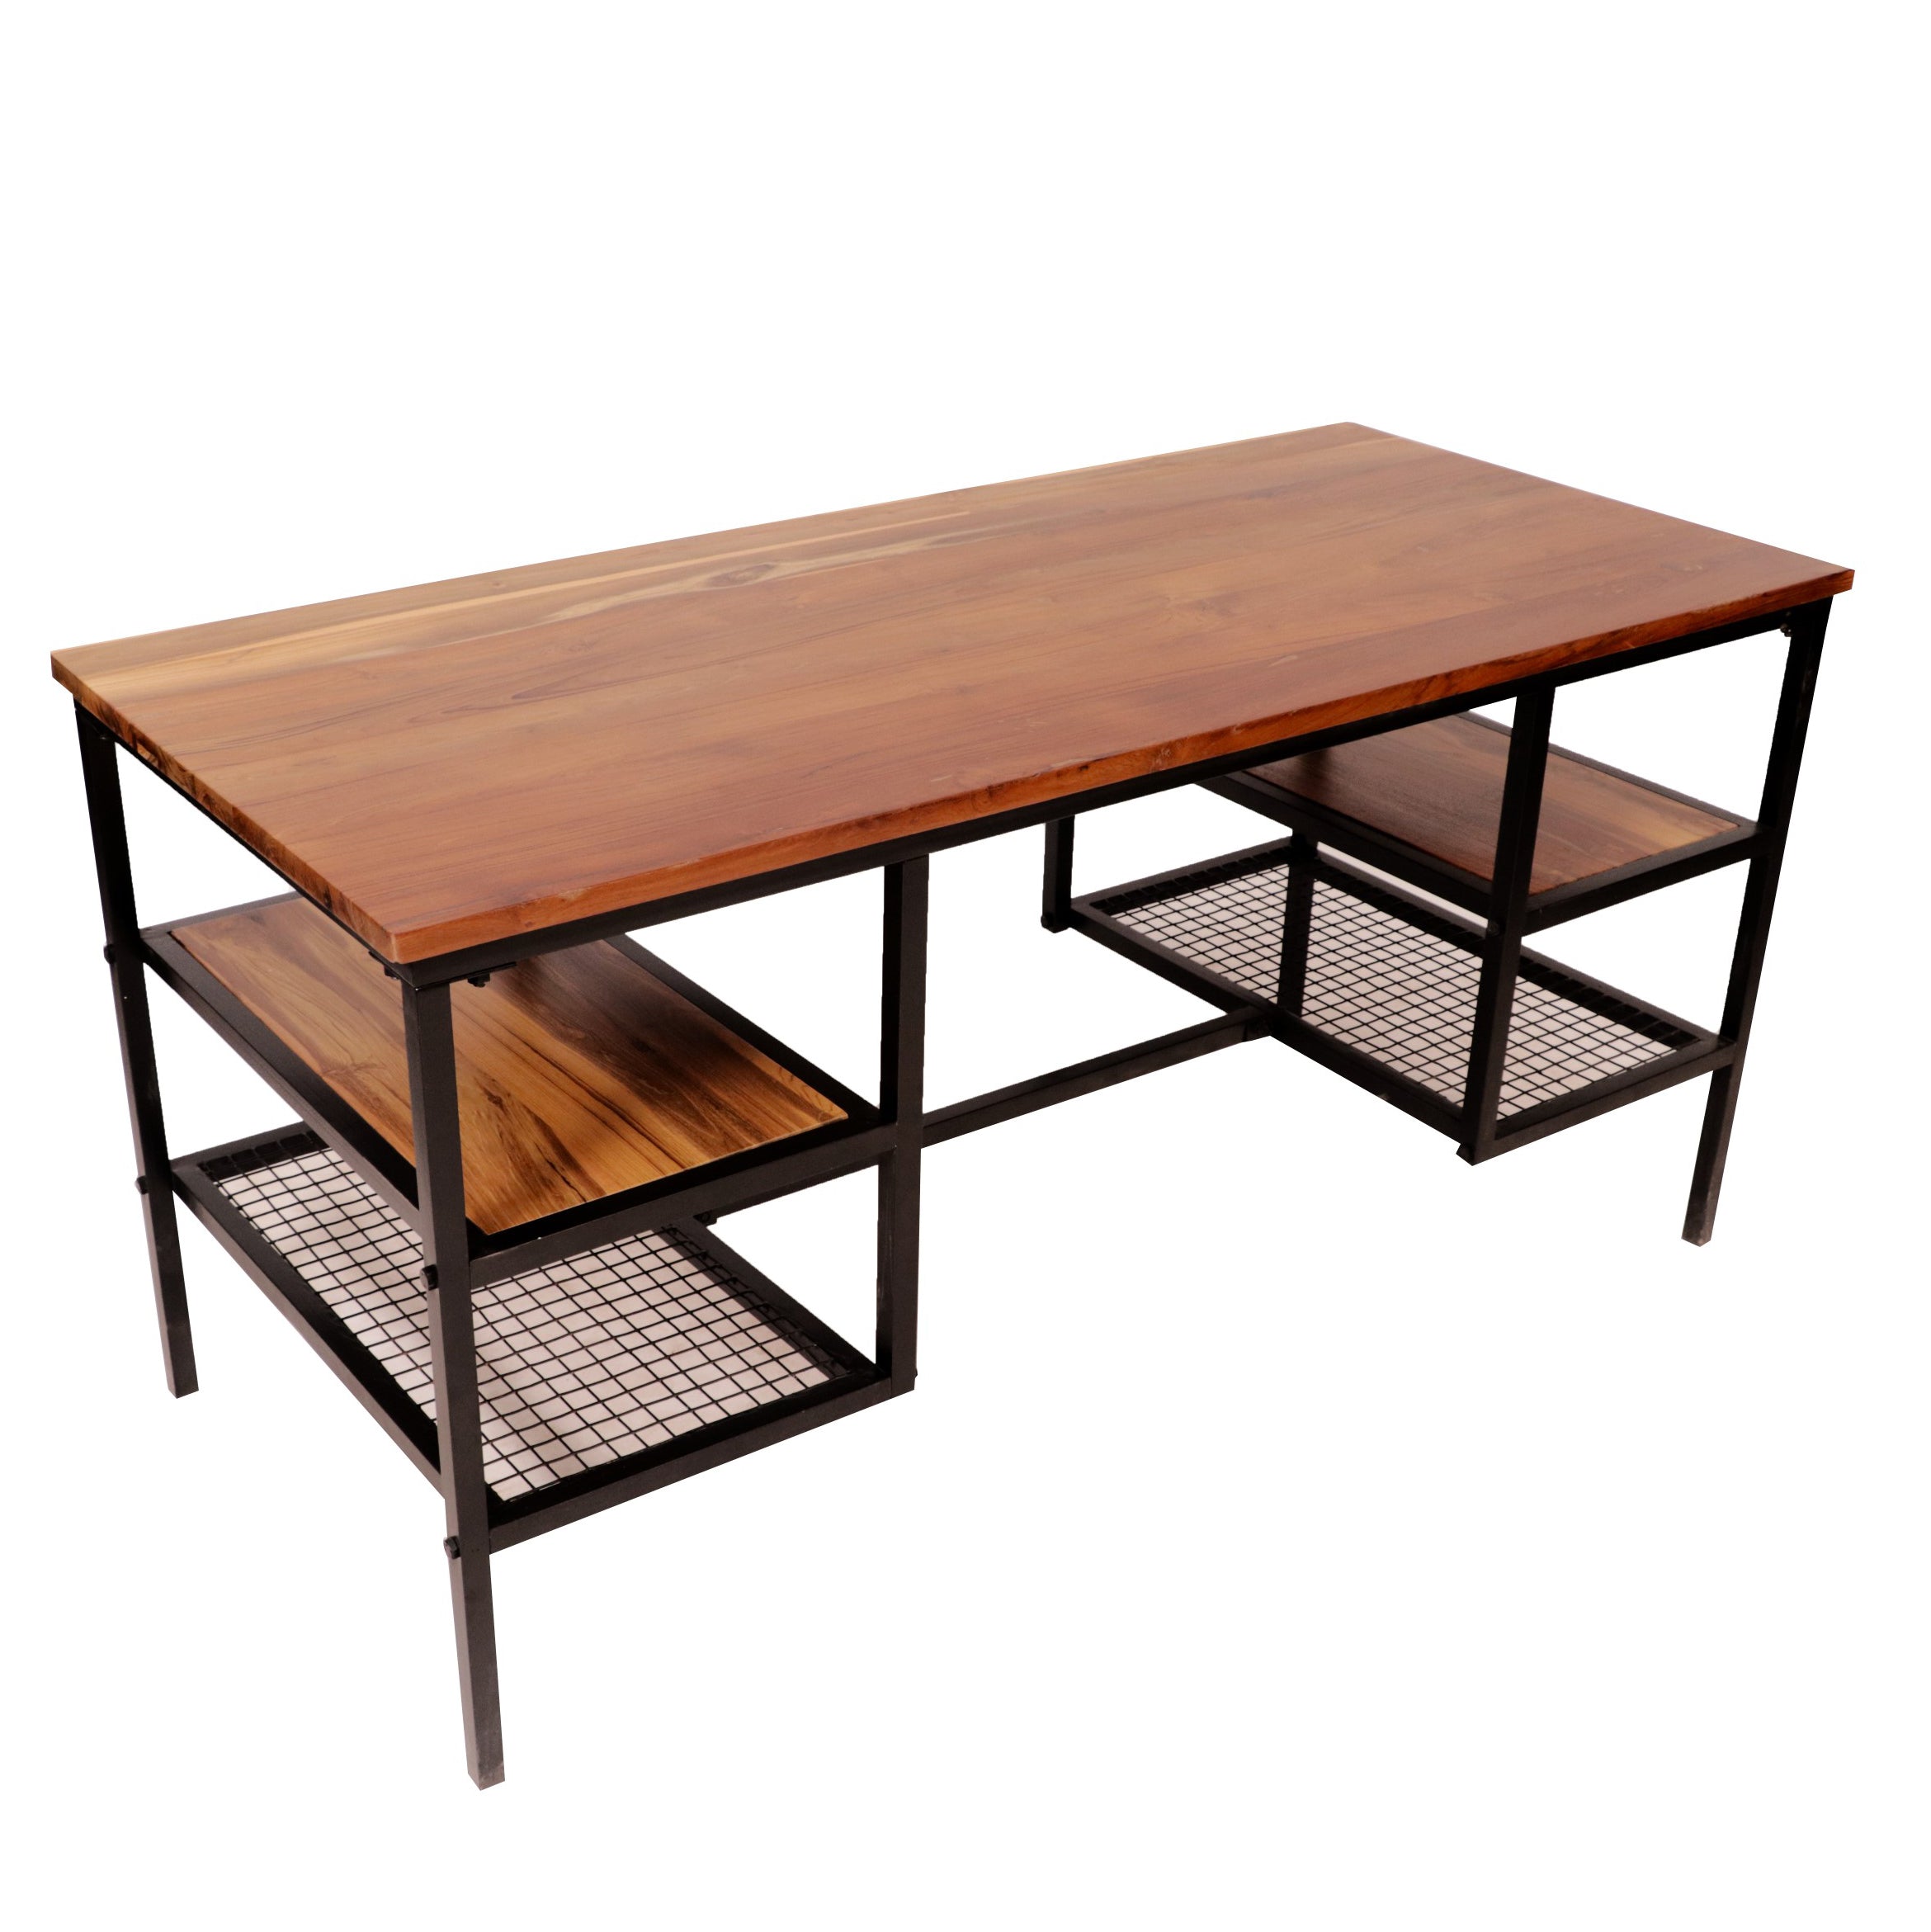 Teak metallic frame Multipurpose Table Study Table